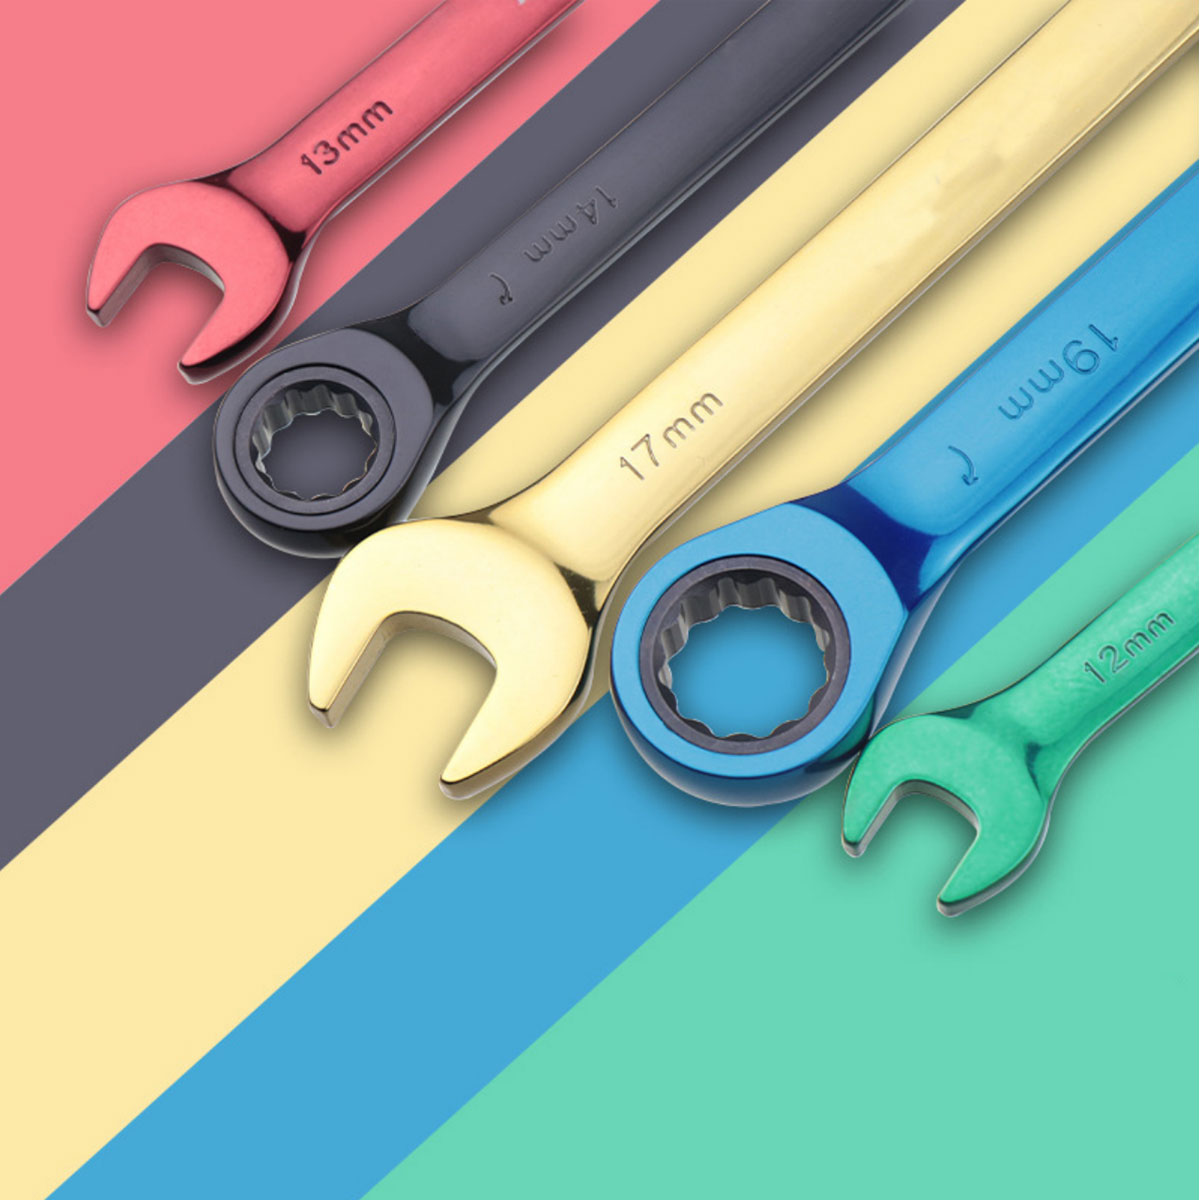 Farb-Ring-Maulschlüssel-Satz. Mehrzweck-Maulschlüssel, beweglicher Schraubenschlüssel, Handwerkzeuge